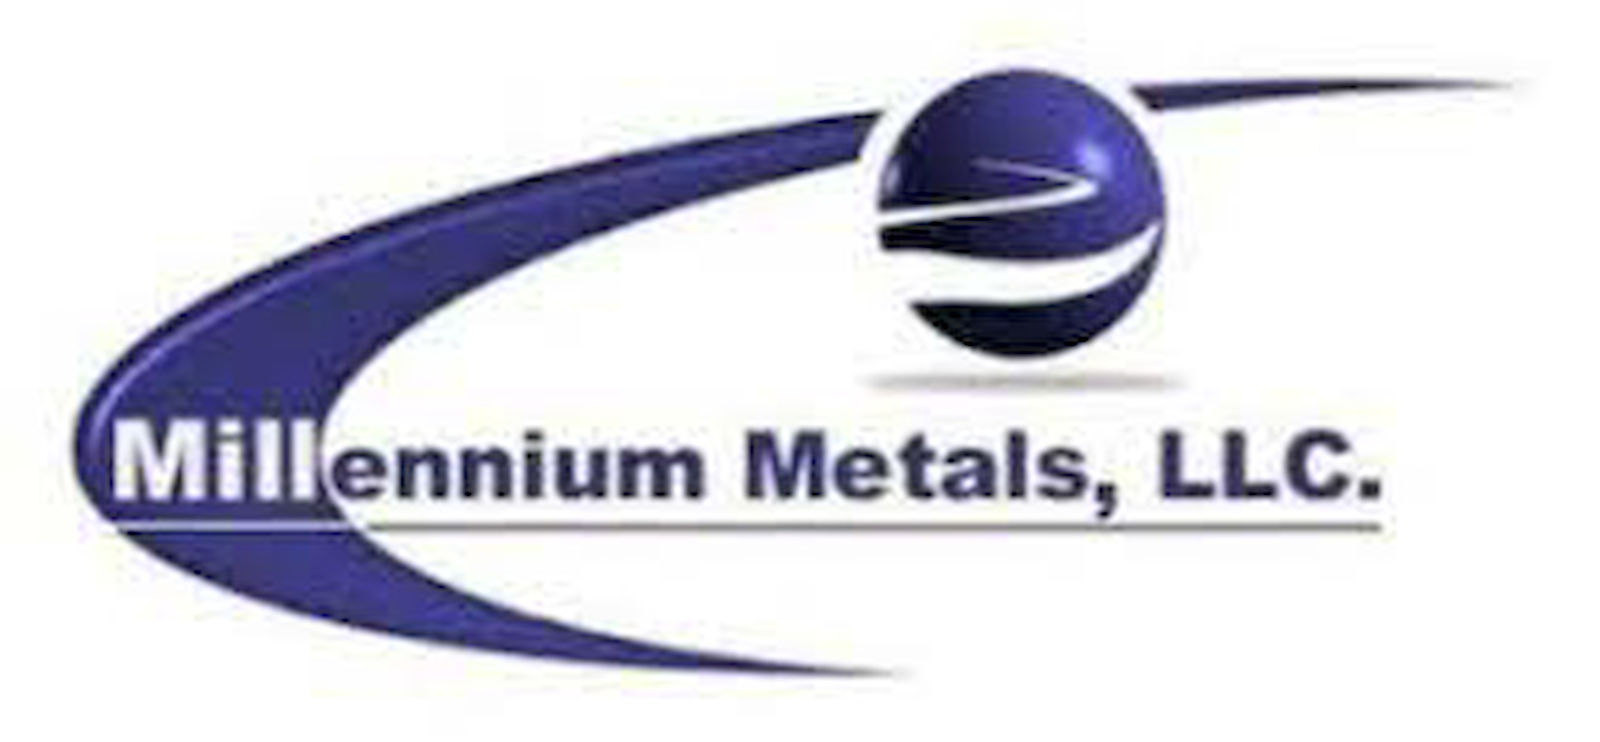 Millennium Metals, LLC